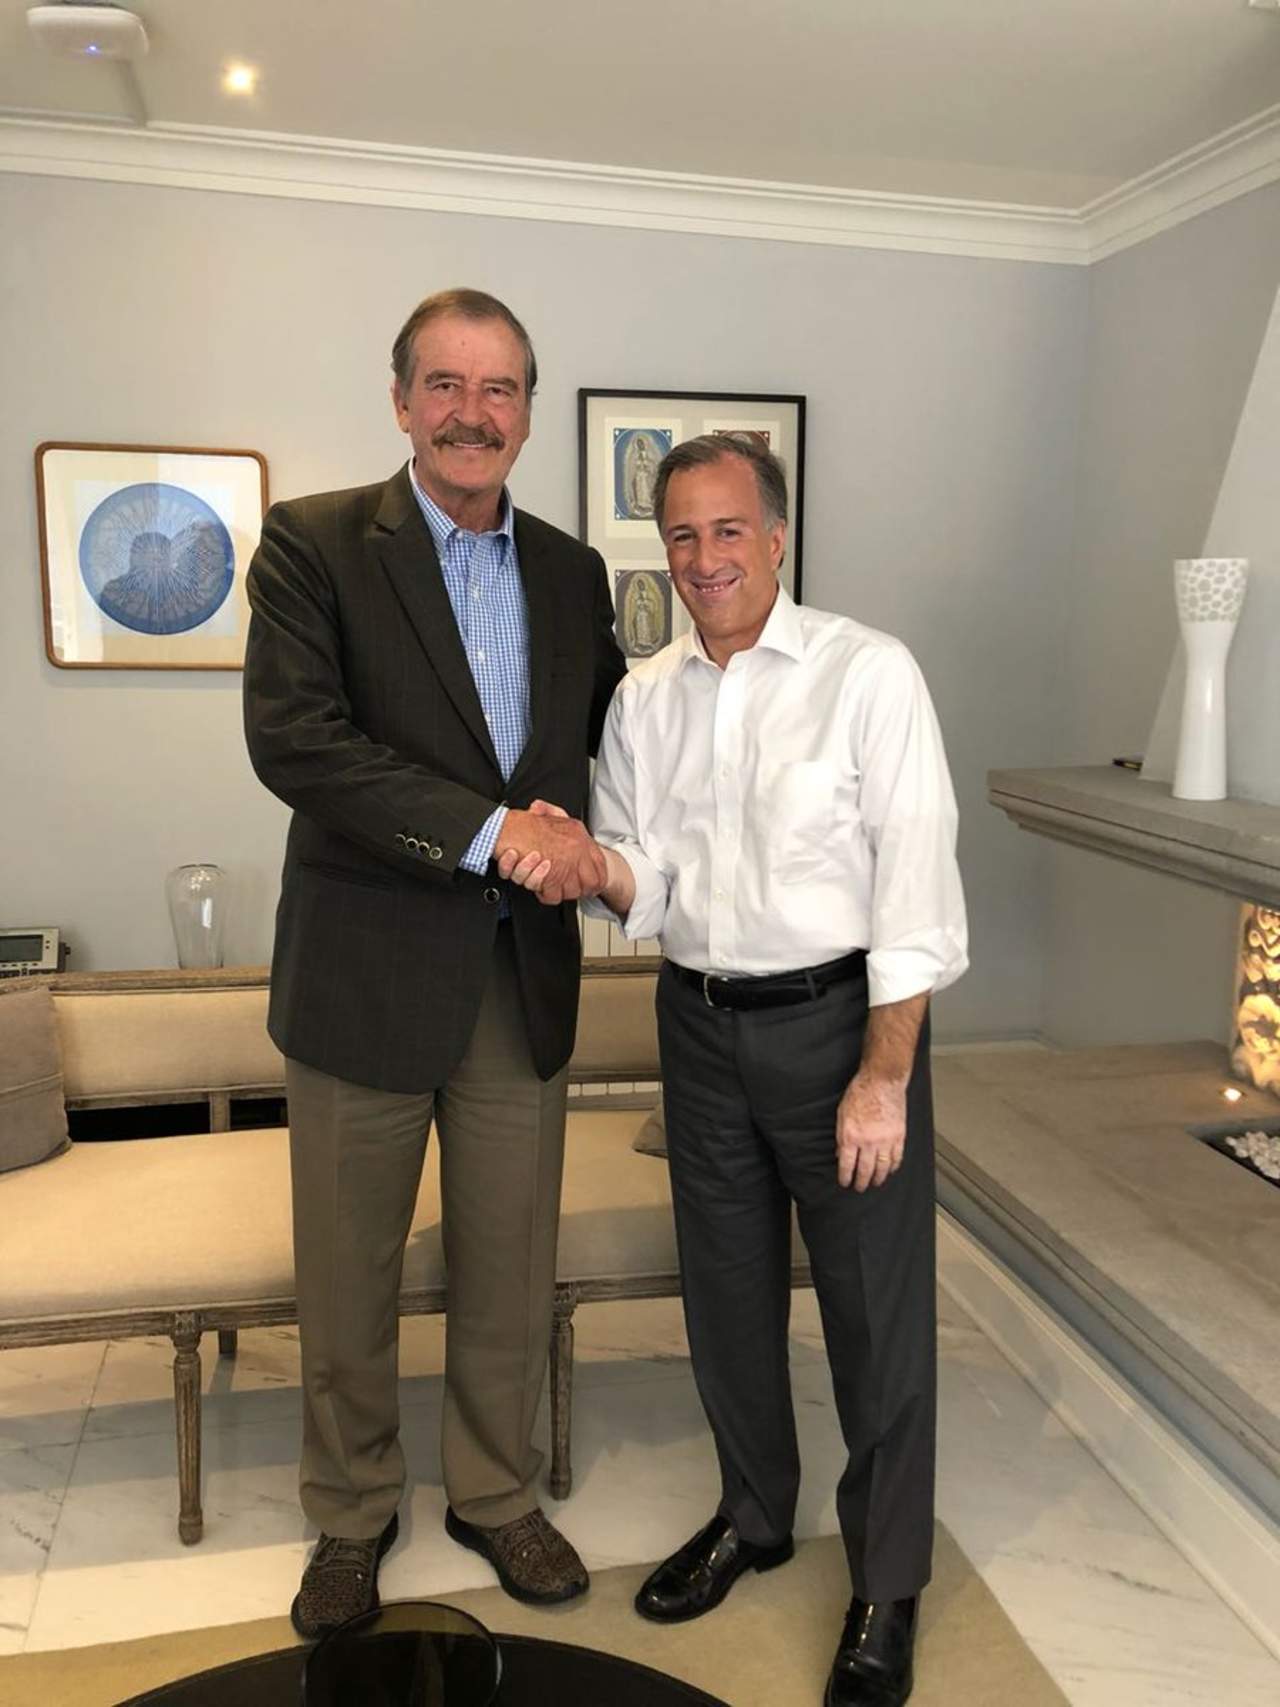 El candidato de la coalición Todos por México, José Antonio Meade, sostuvo un encuentro con el expresidente Vicente Fox Quesada, quien le manifestó su apoyo. (TWITTER)